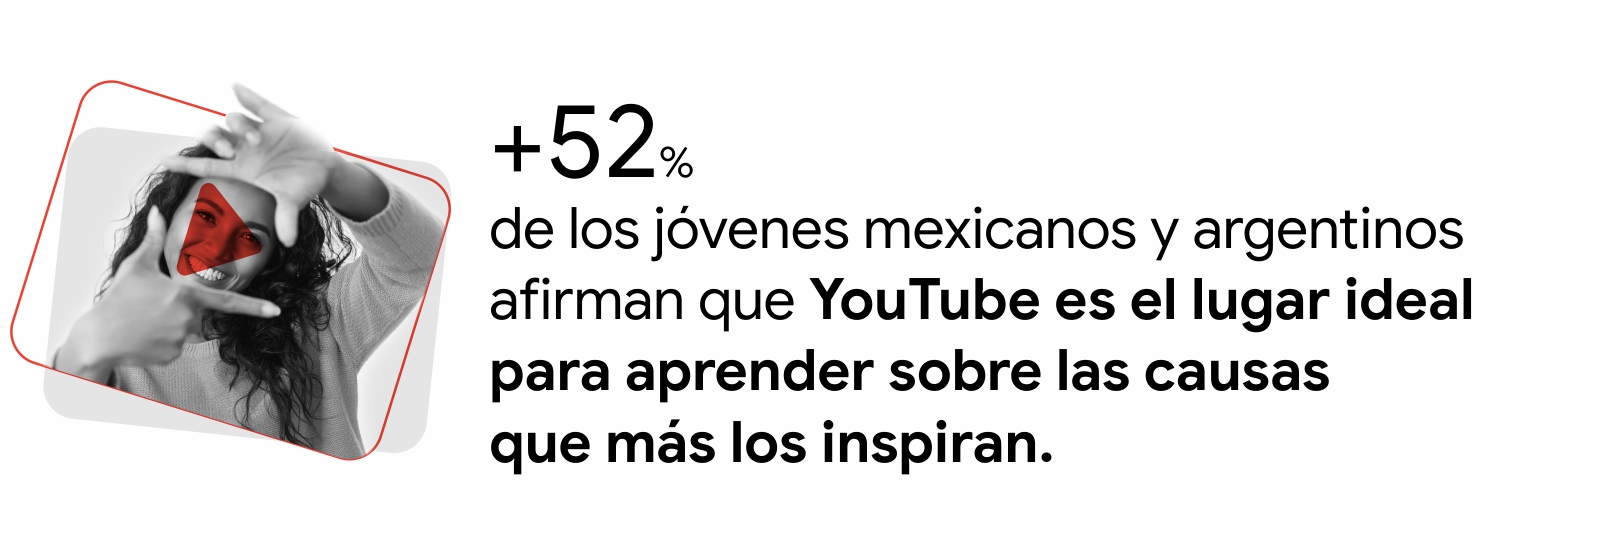 Una joven con pelo enrulado forma un cuadrado con sus dedos. Sobre ella, el logo de YouTube. A la derecha la leyenda: 52% de los jóvenes mexicanos y argentinos afirman que YouTube es el lugar ideal para aprender sobre las causas que más les inspiran.